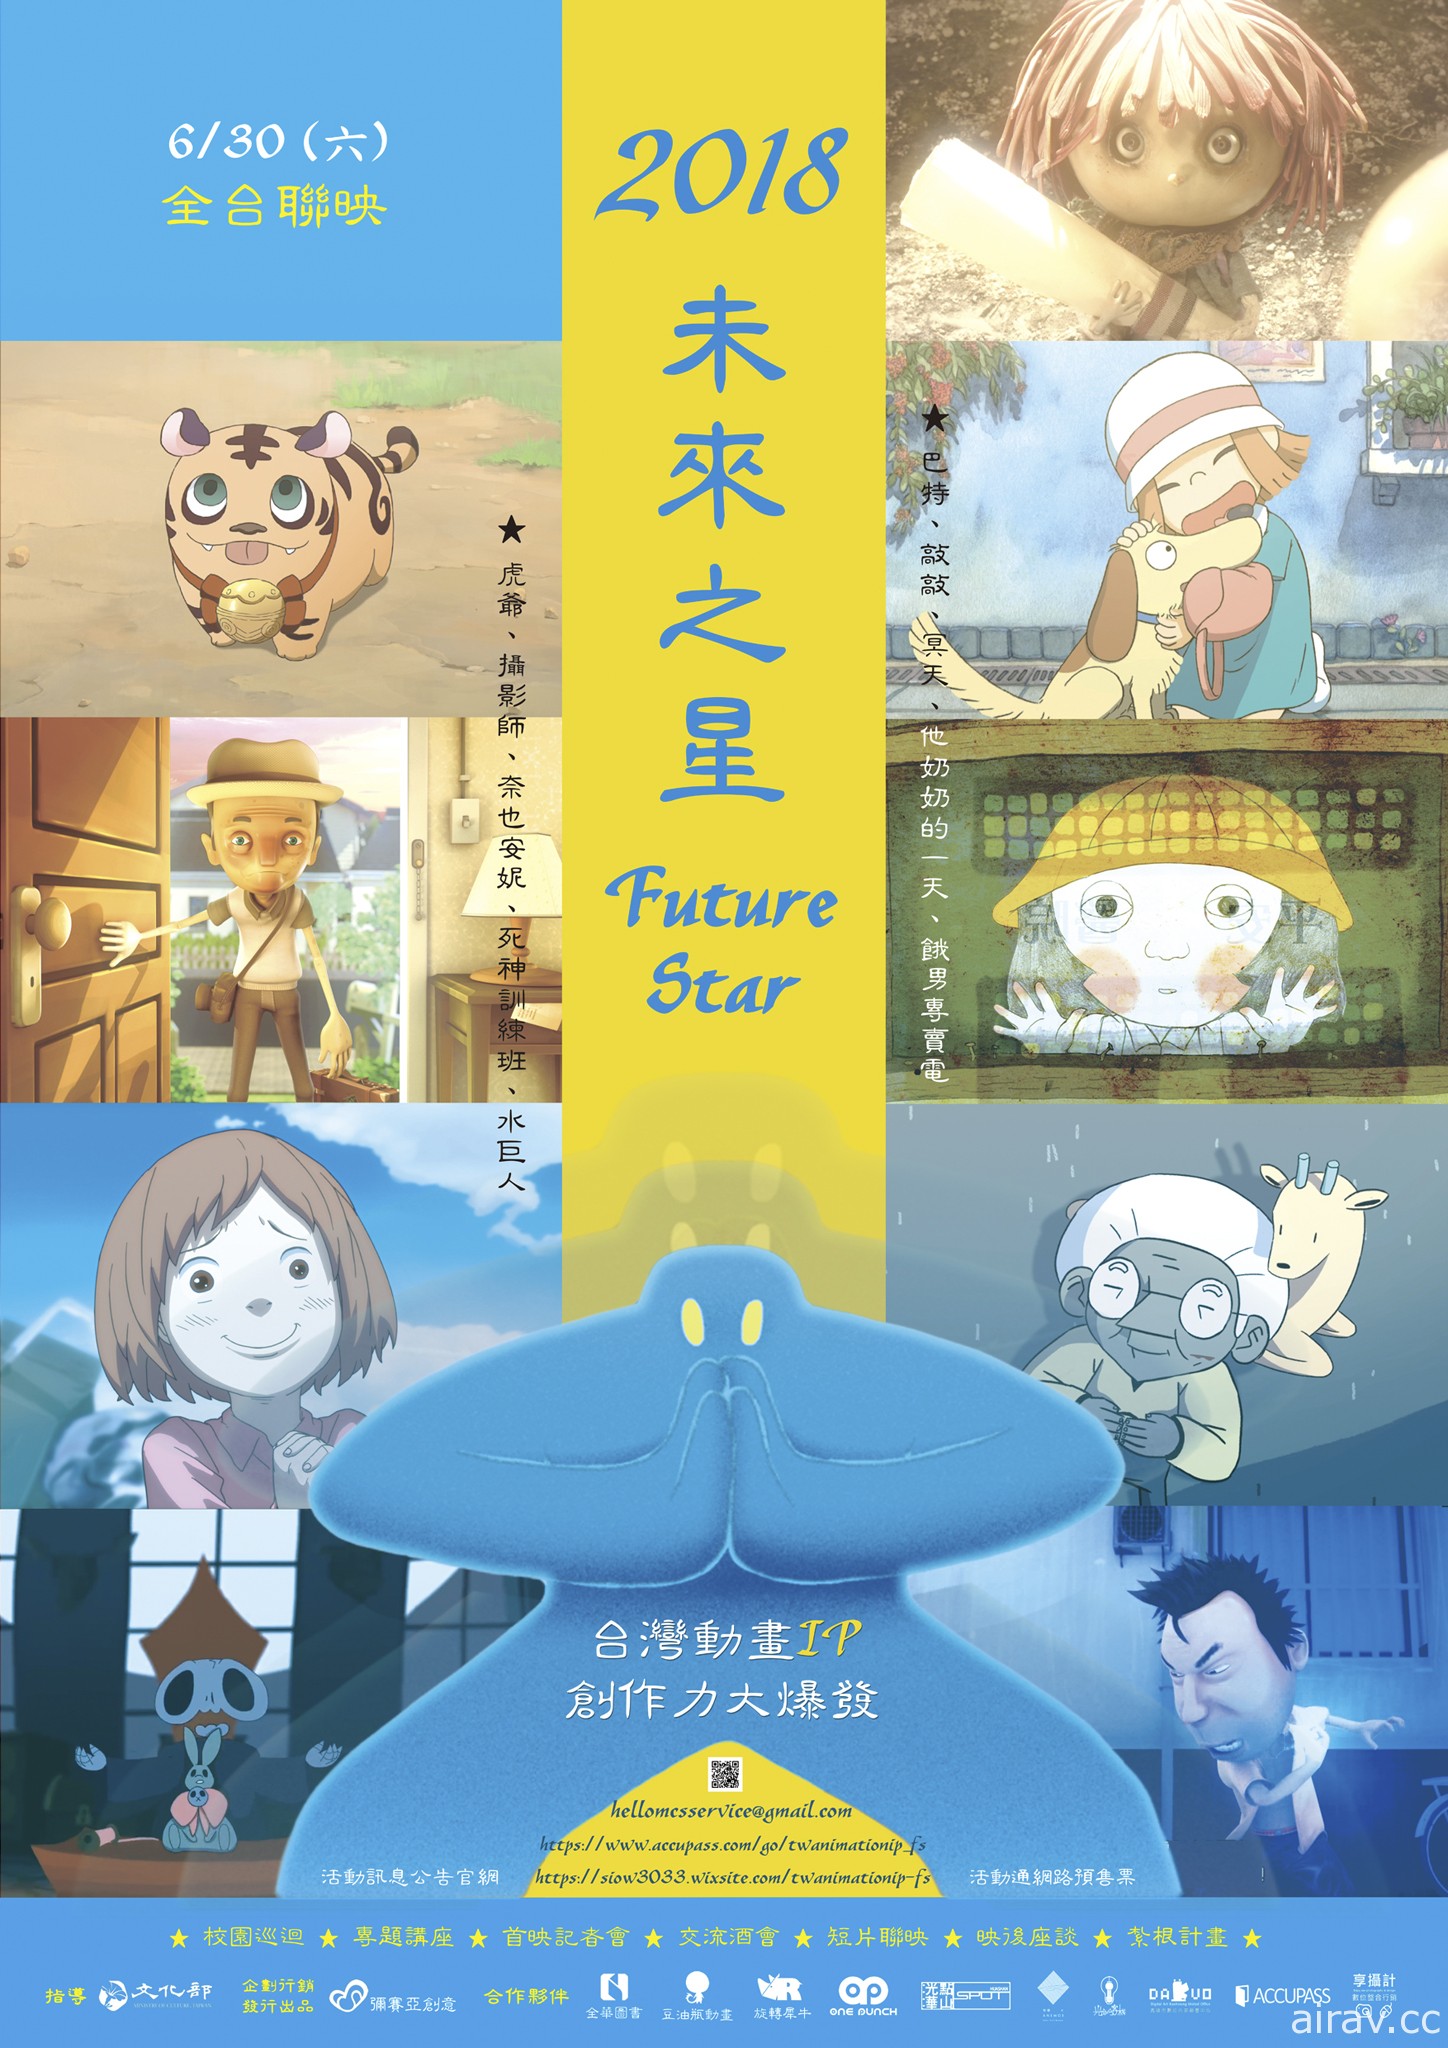 「2018 未來之星」台灣動畫短片將自首度全台院線聯映 動畫專題講座同步開跑